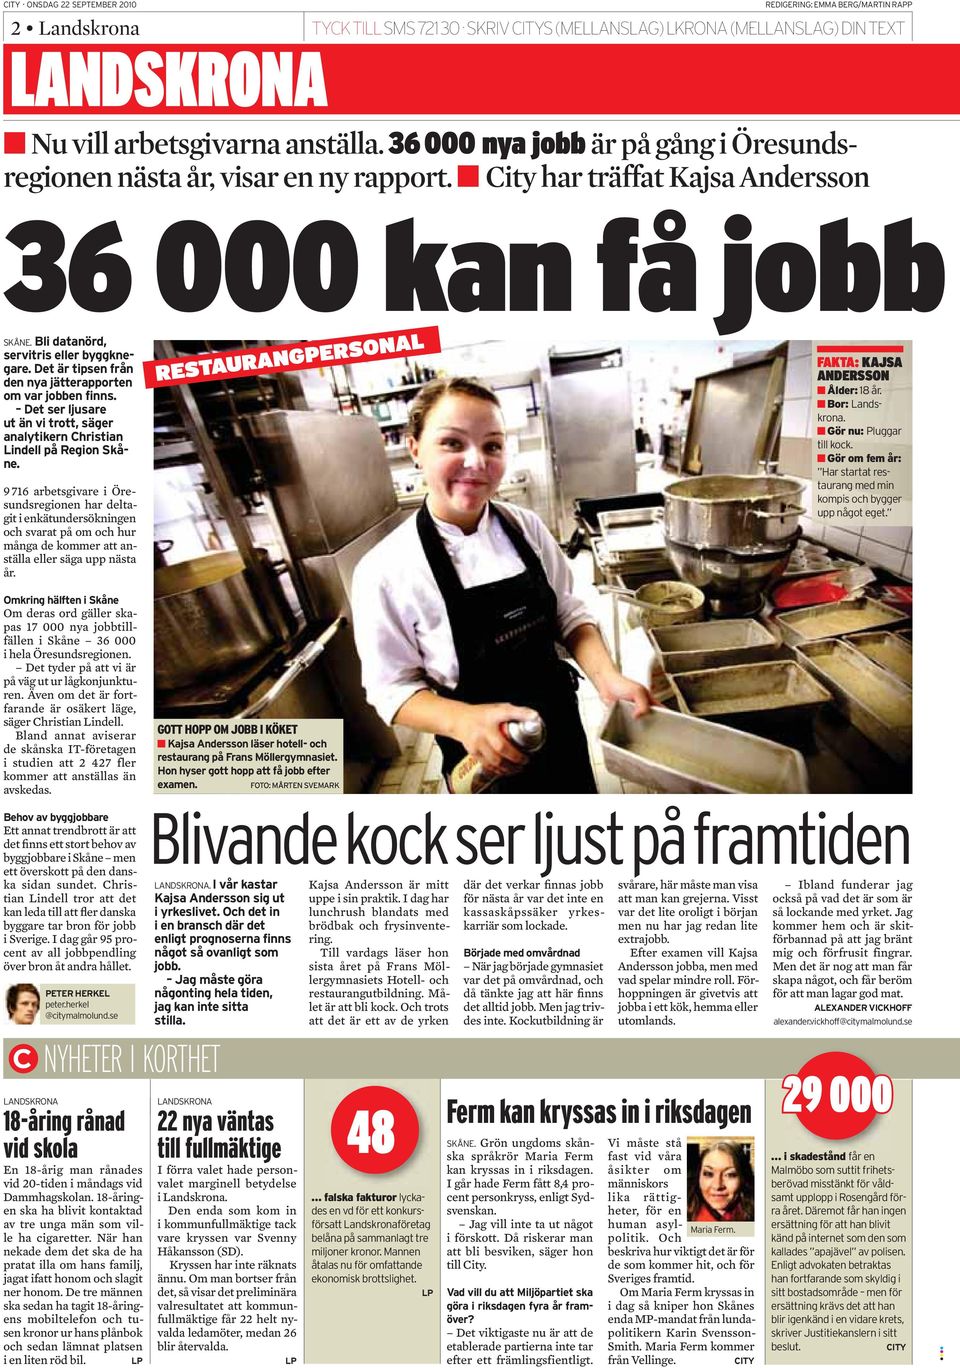 år. Om deras ord gäller skapas 17 000 nya jobbtillfällen i Skåne 36 000 i hela Öresundsregionen. Det tyder på att vi är på väg ut ur lågkonjunkturen.